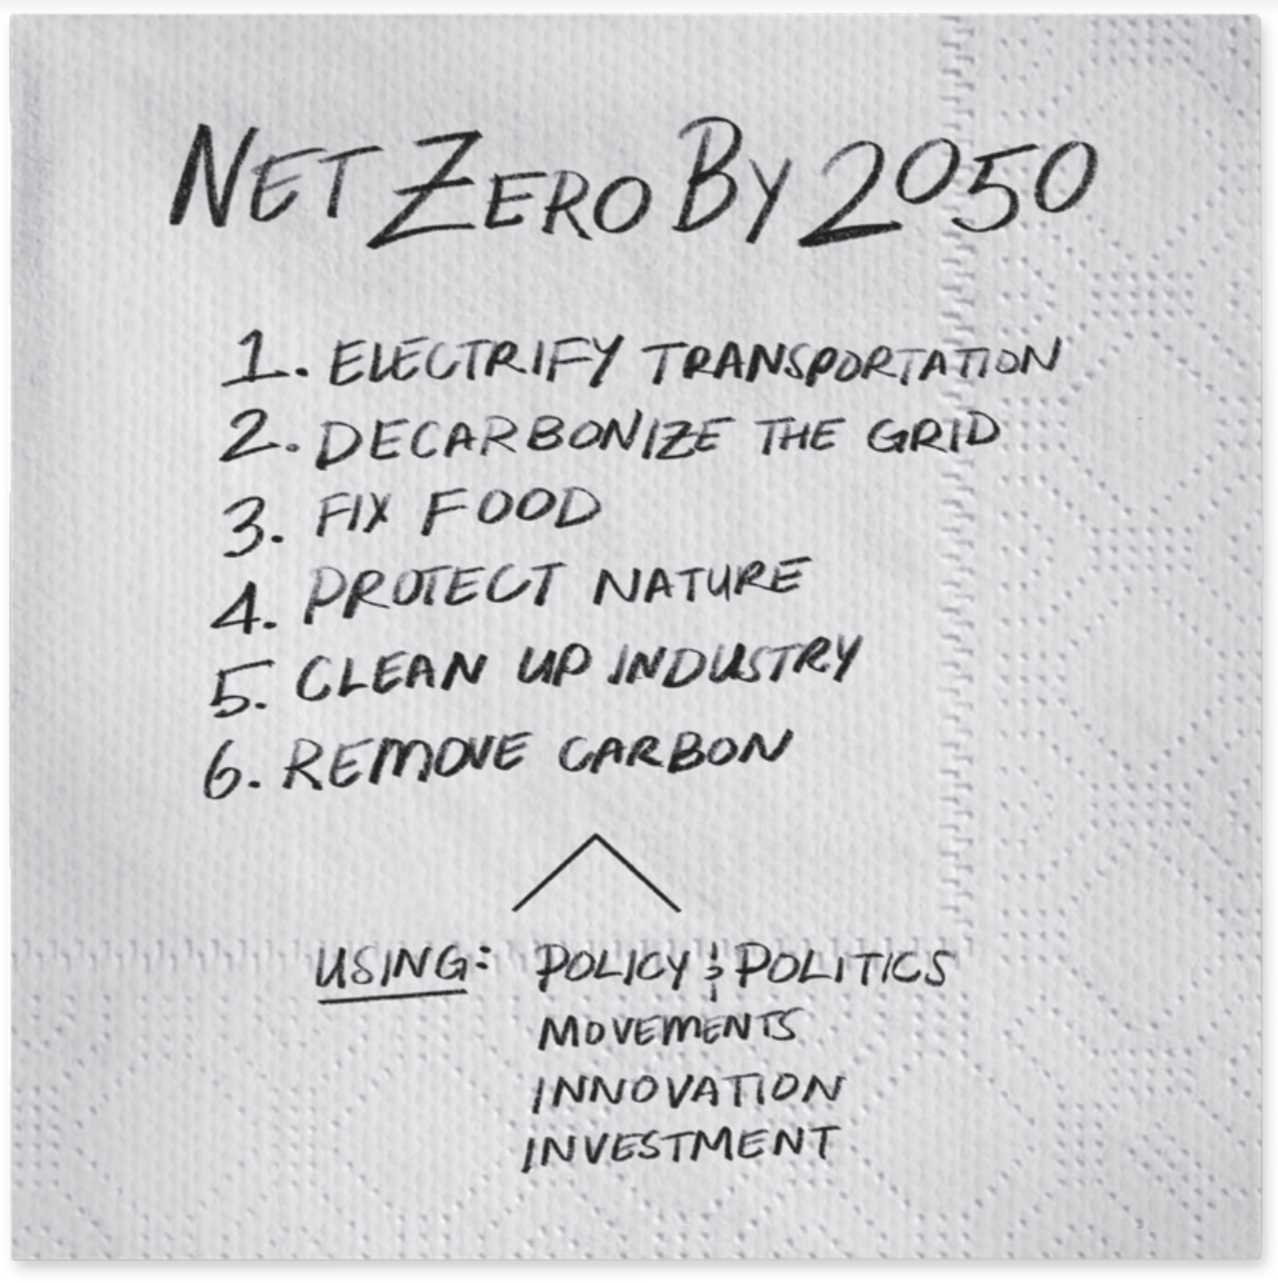 Net Zero by 2050 ‘Speed & Scale’: John Doerr